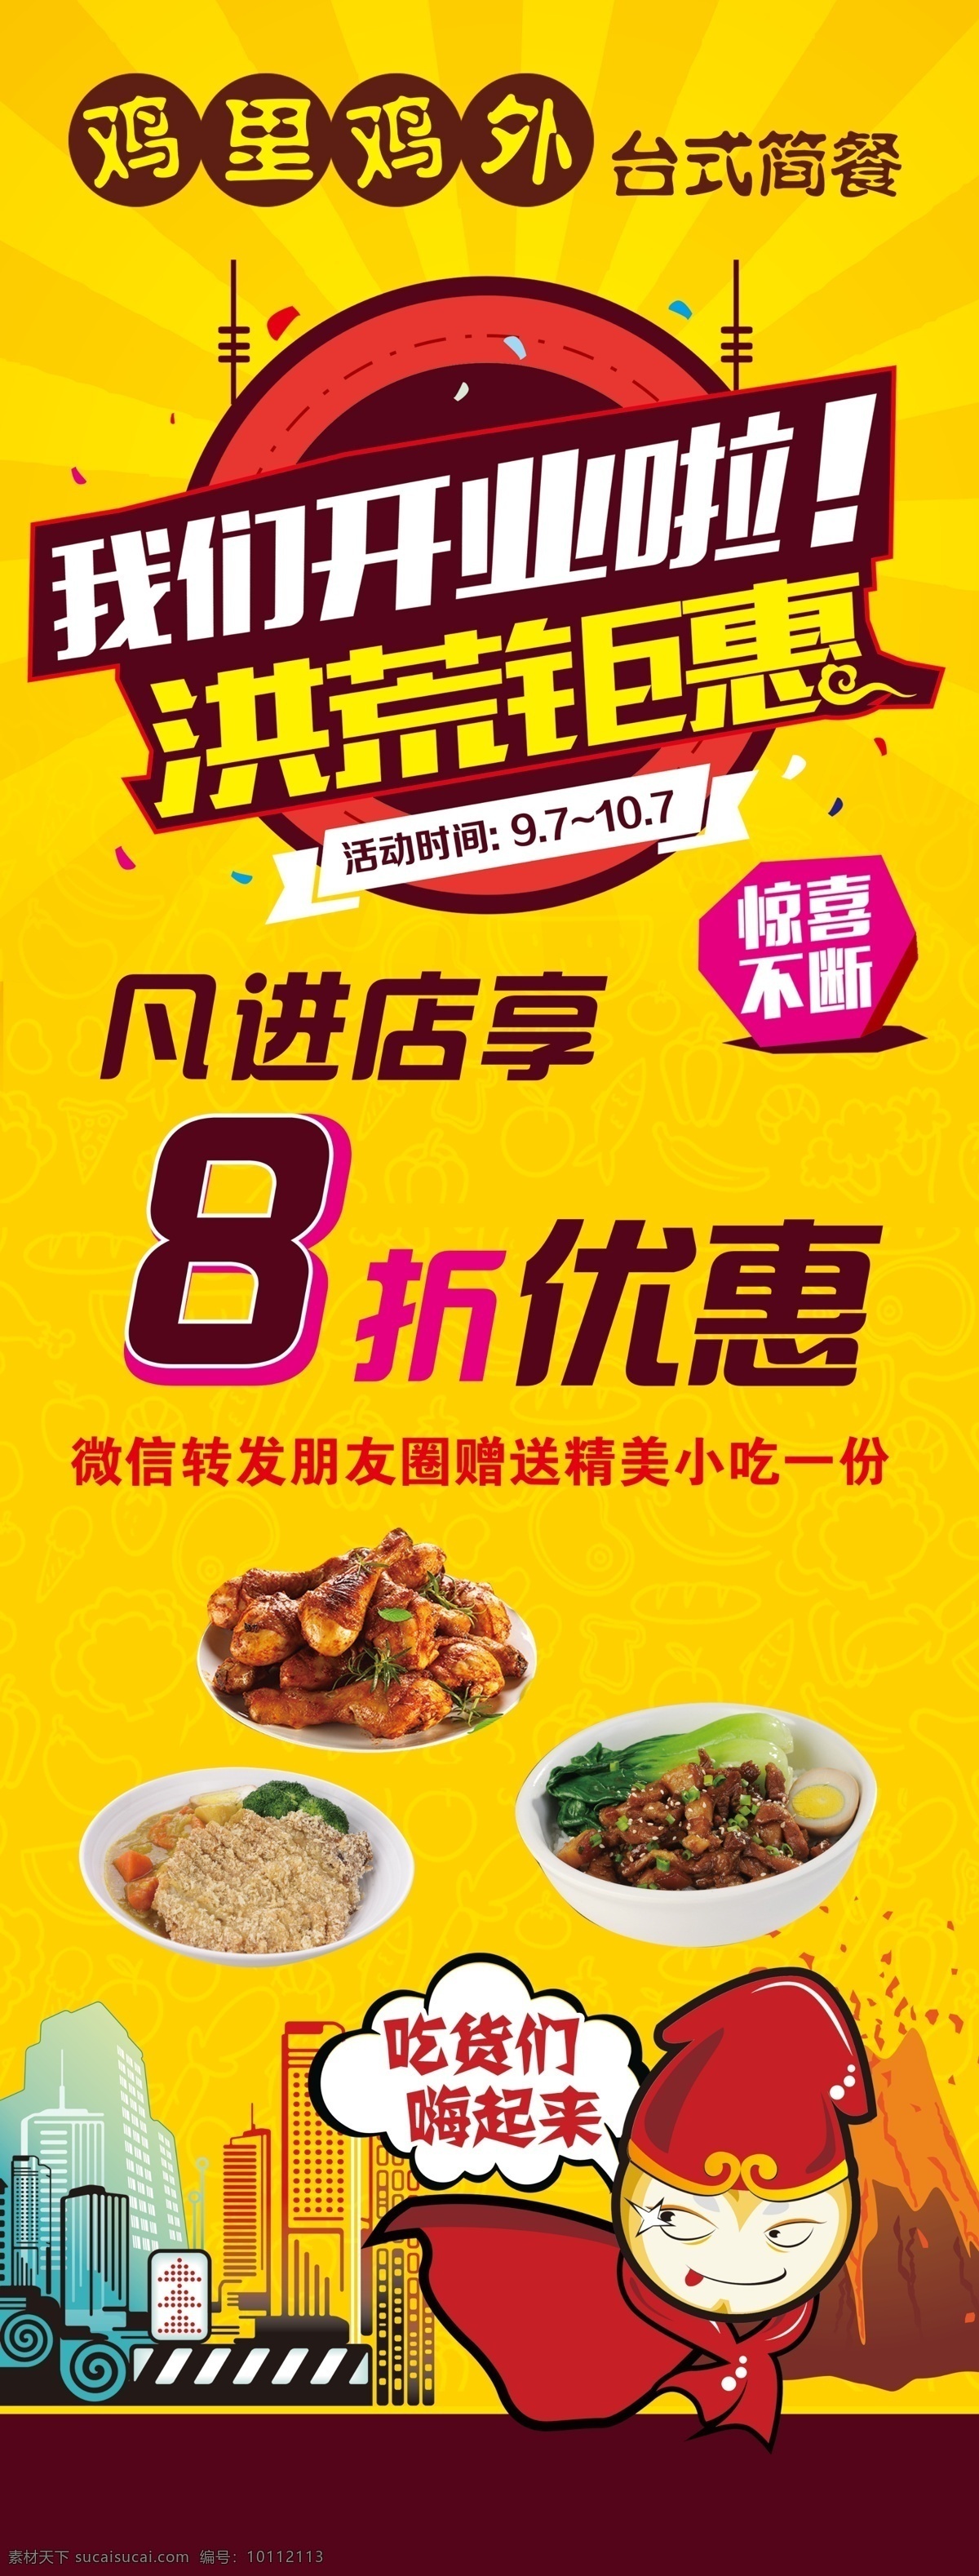 炸鸡海报 海报 简餐 快餐 吃货 钜惠 开业 活动 惊喜